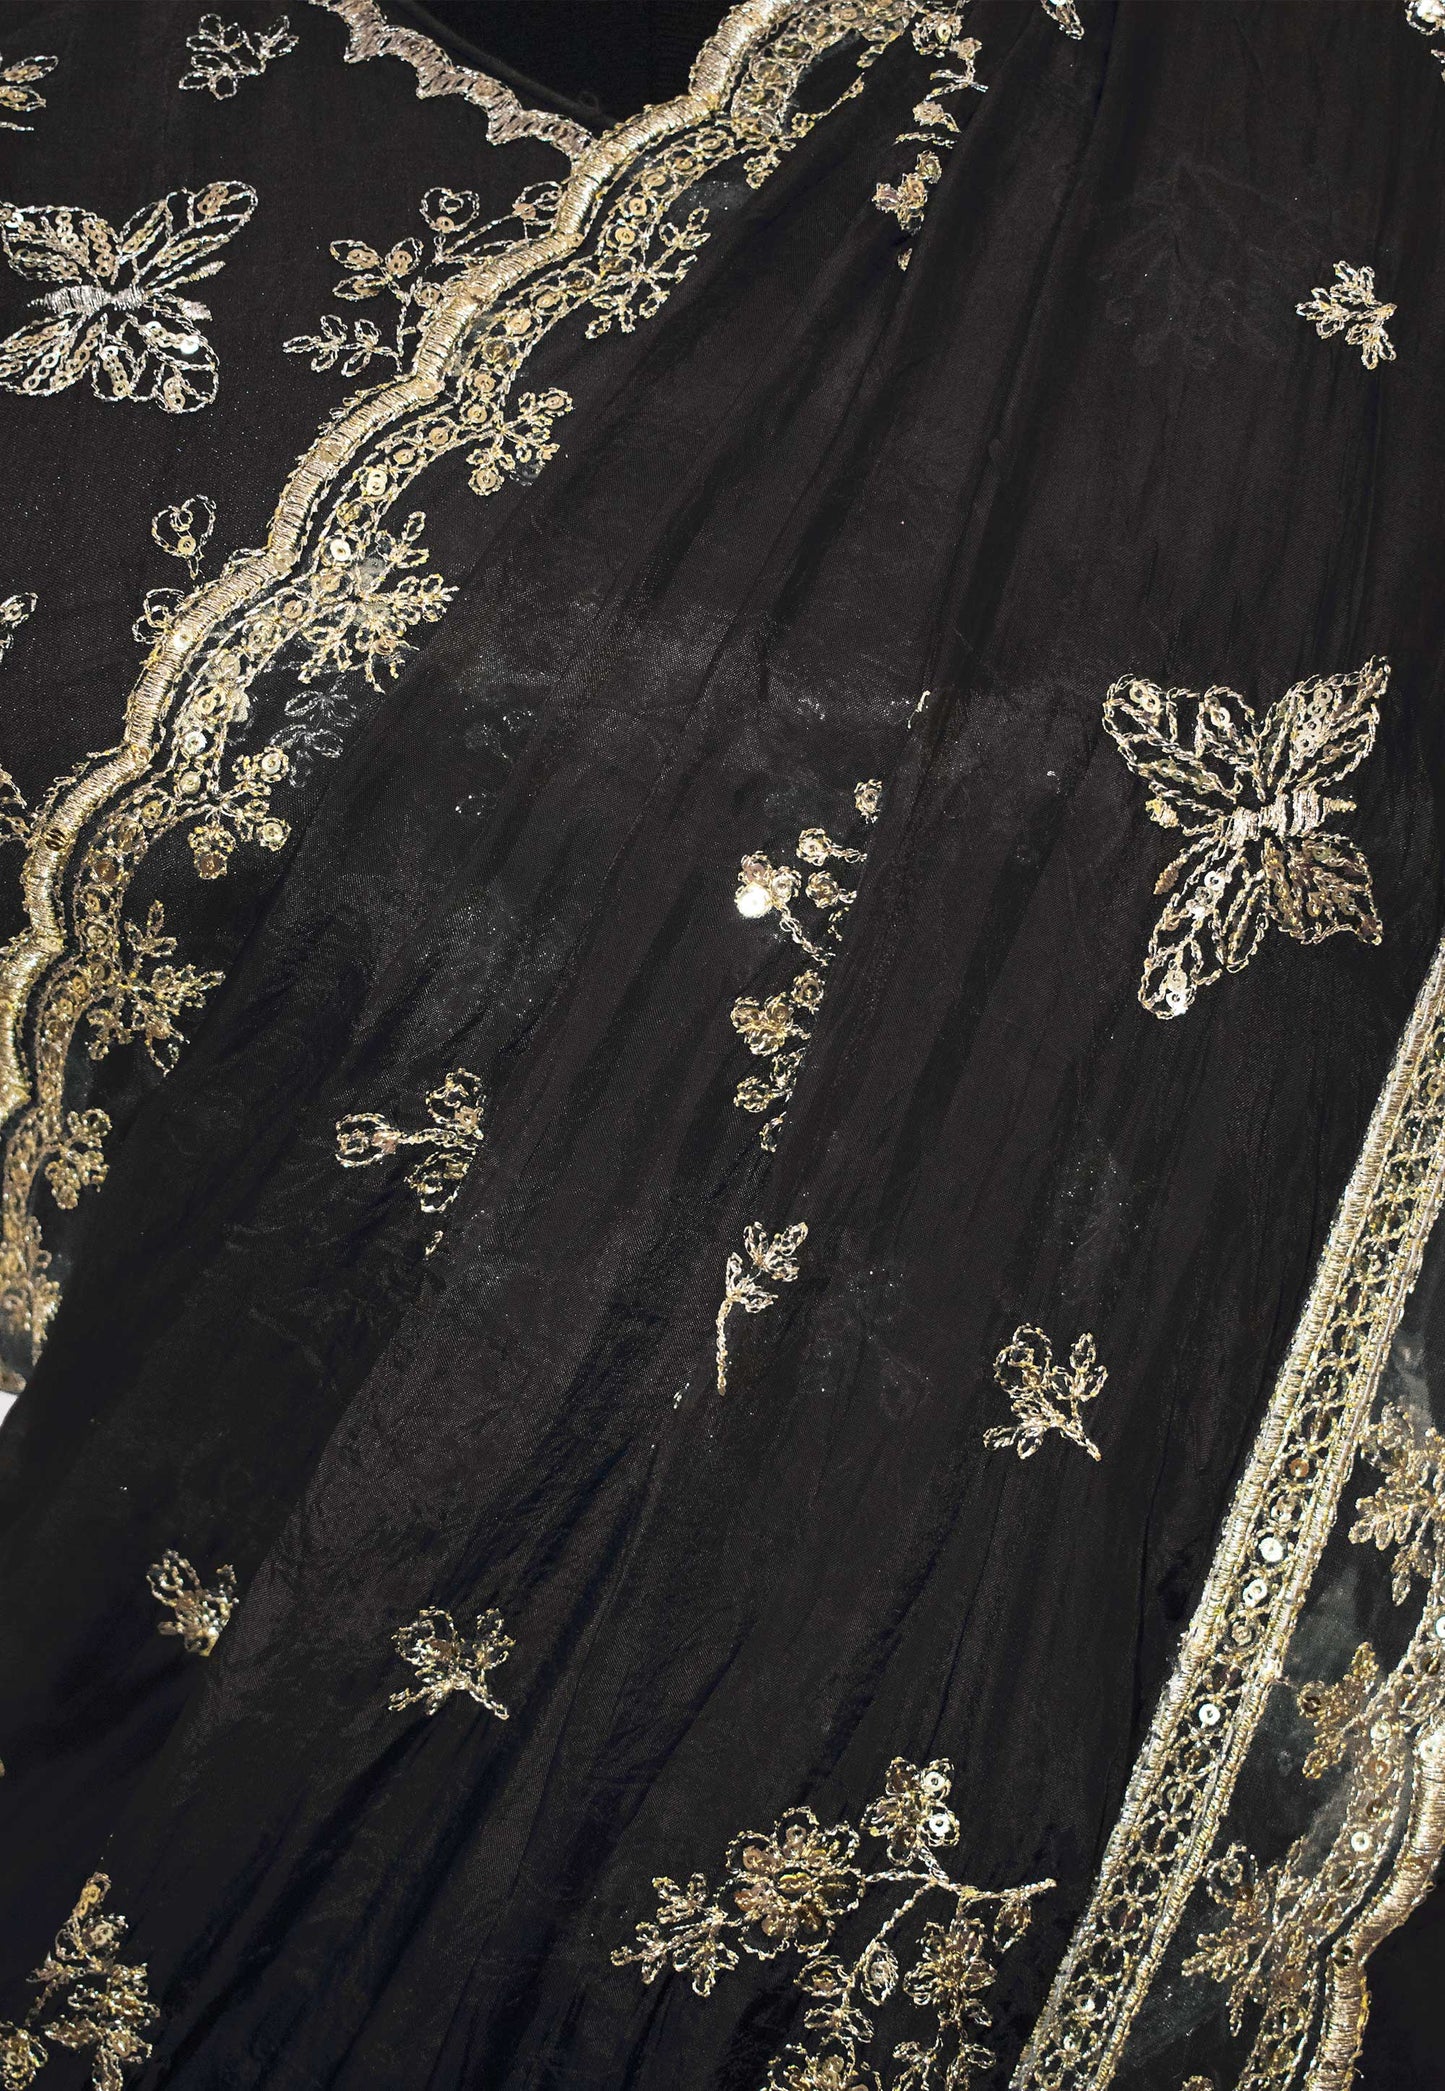 Zari Embroidered Silk Saree in Black